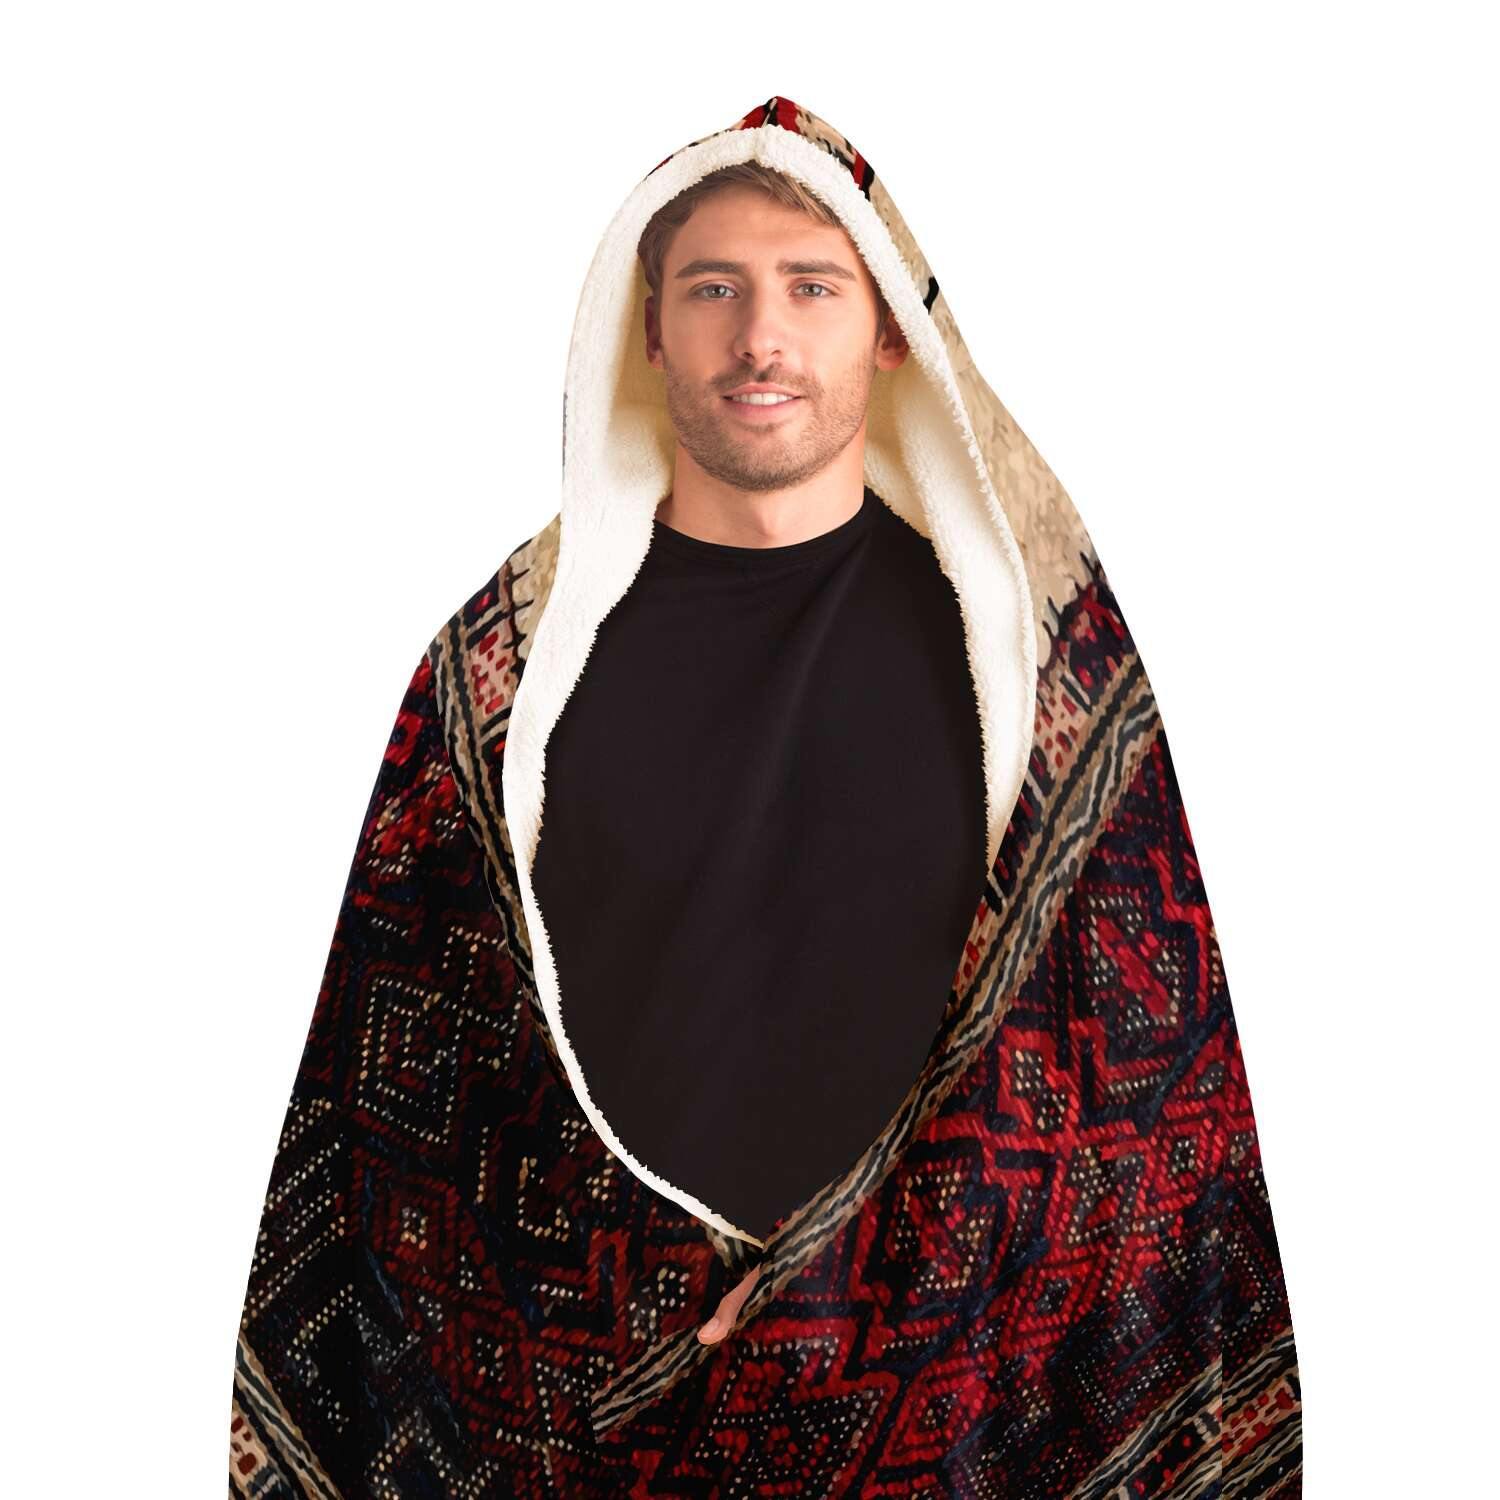 Hooded Blanket - AOP Hooded Blanket, Li Culture Traditional Textile Design